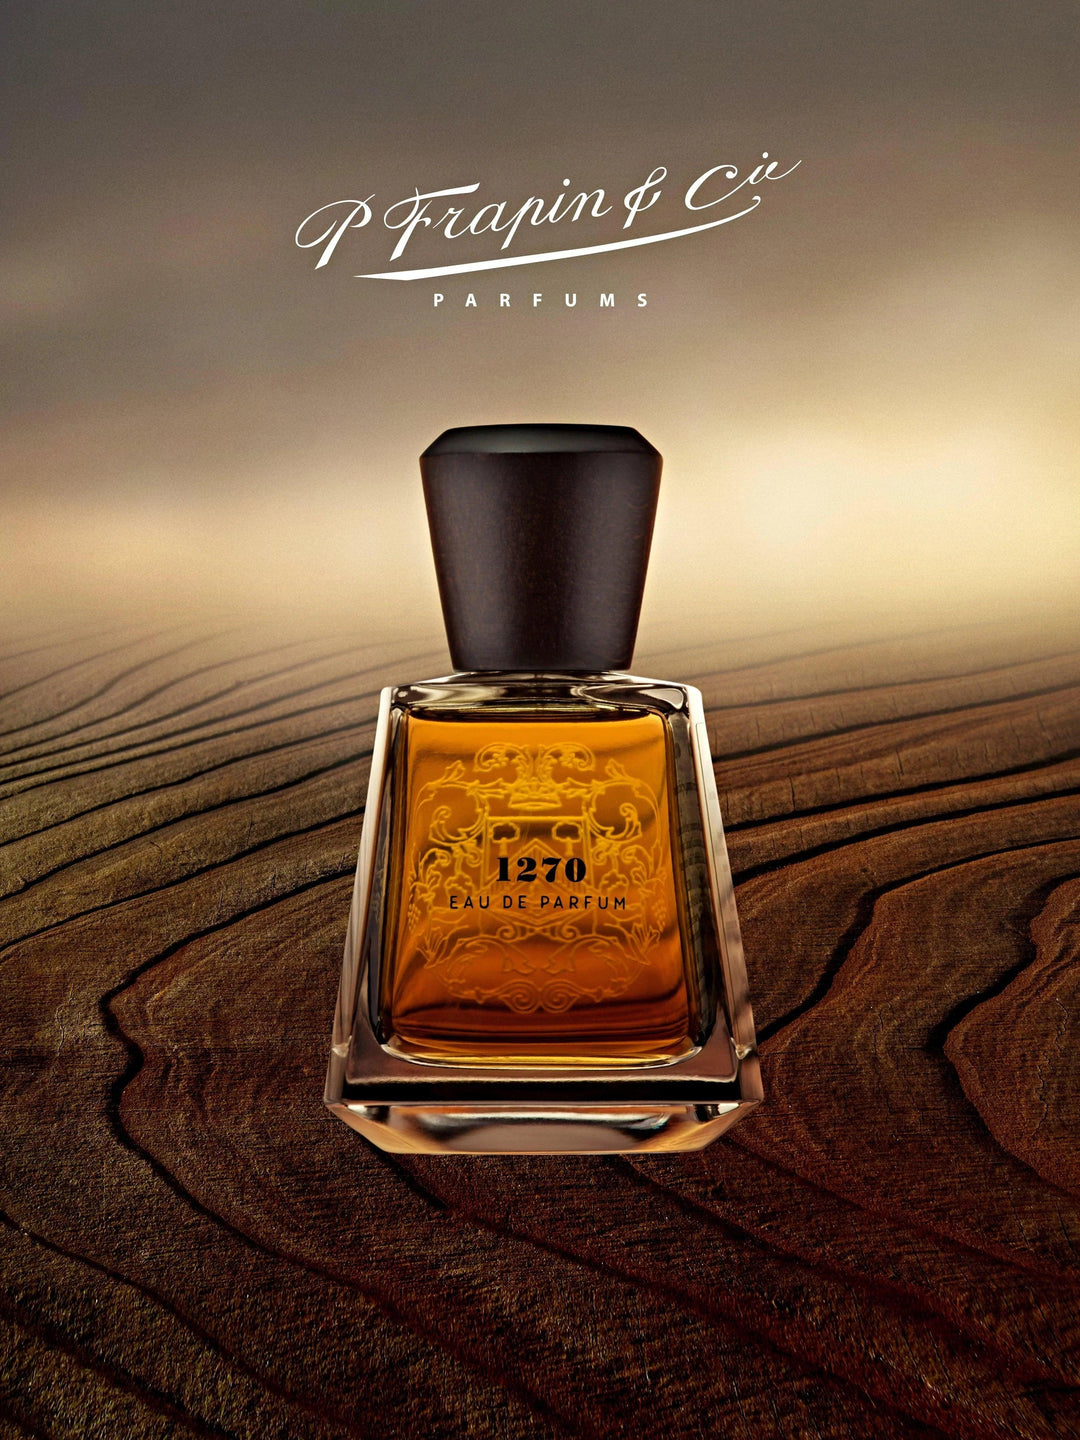 1270 - P.Frapin & Cie 15ml | Parfyme | P.Frapin & Cie | JK SHOP | JK Barber og herre frisør | Lavepriser | Best